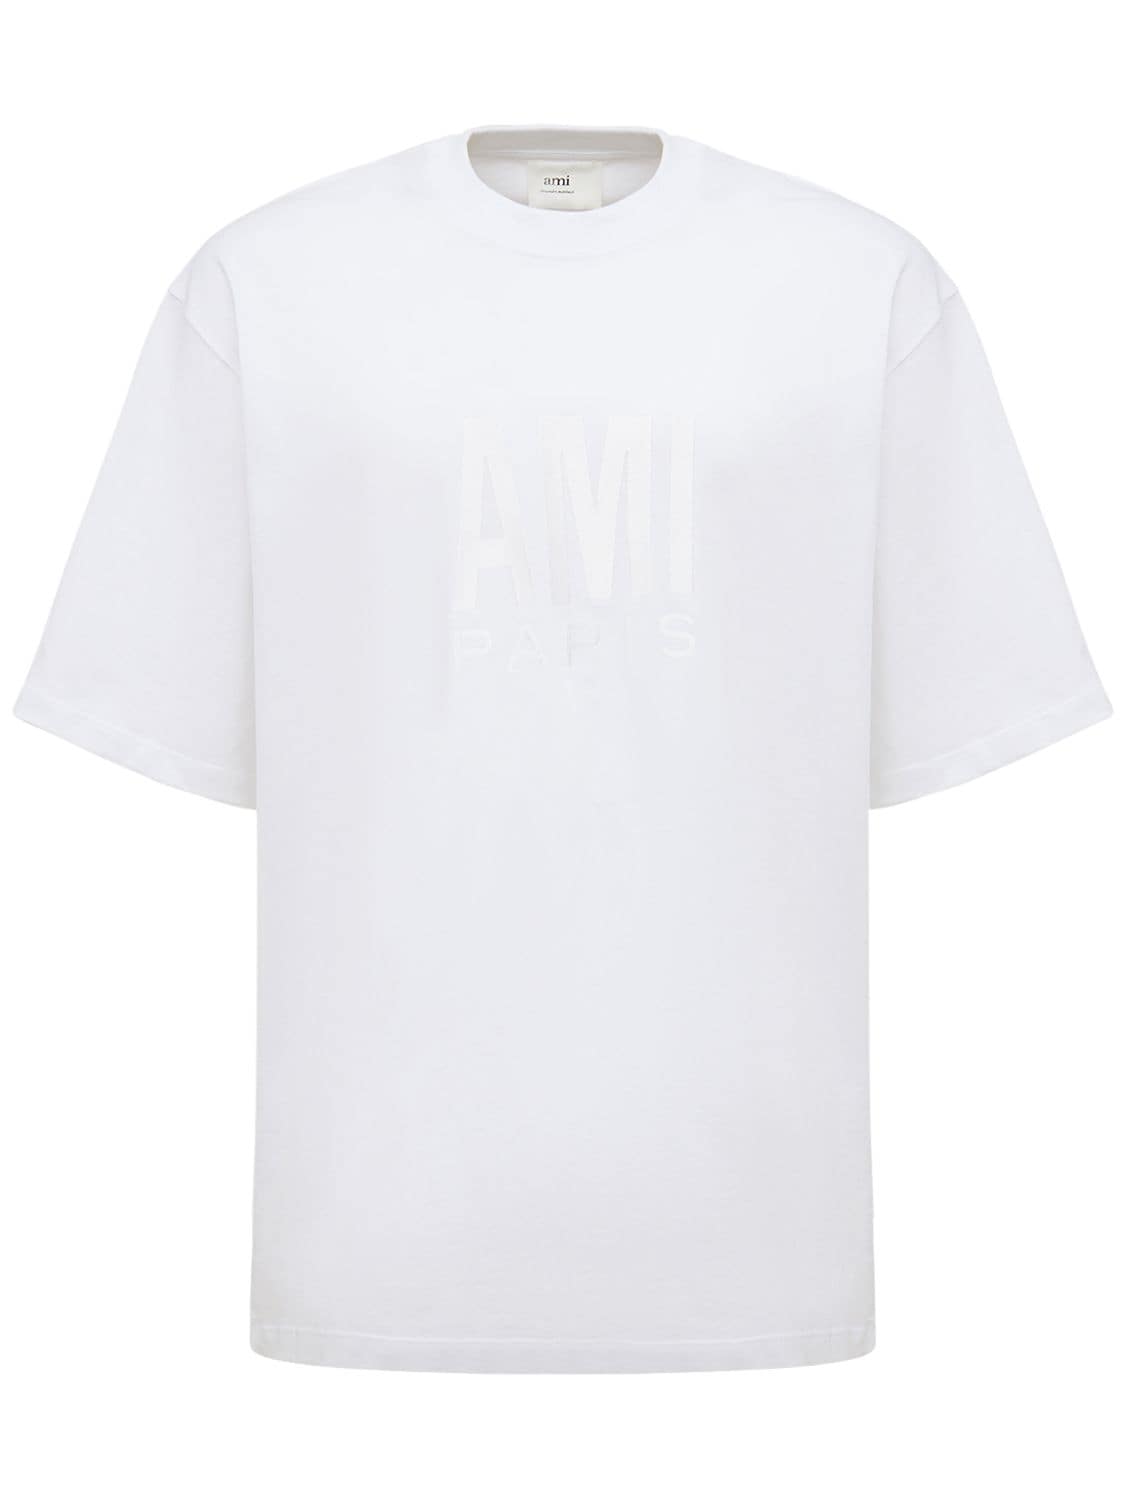 AMI PARIS Logo Organic Cotton Jersey T-shirt